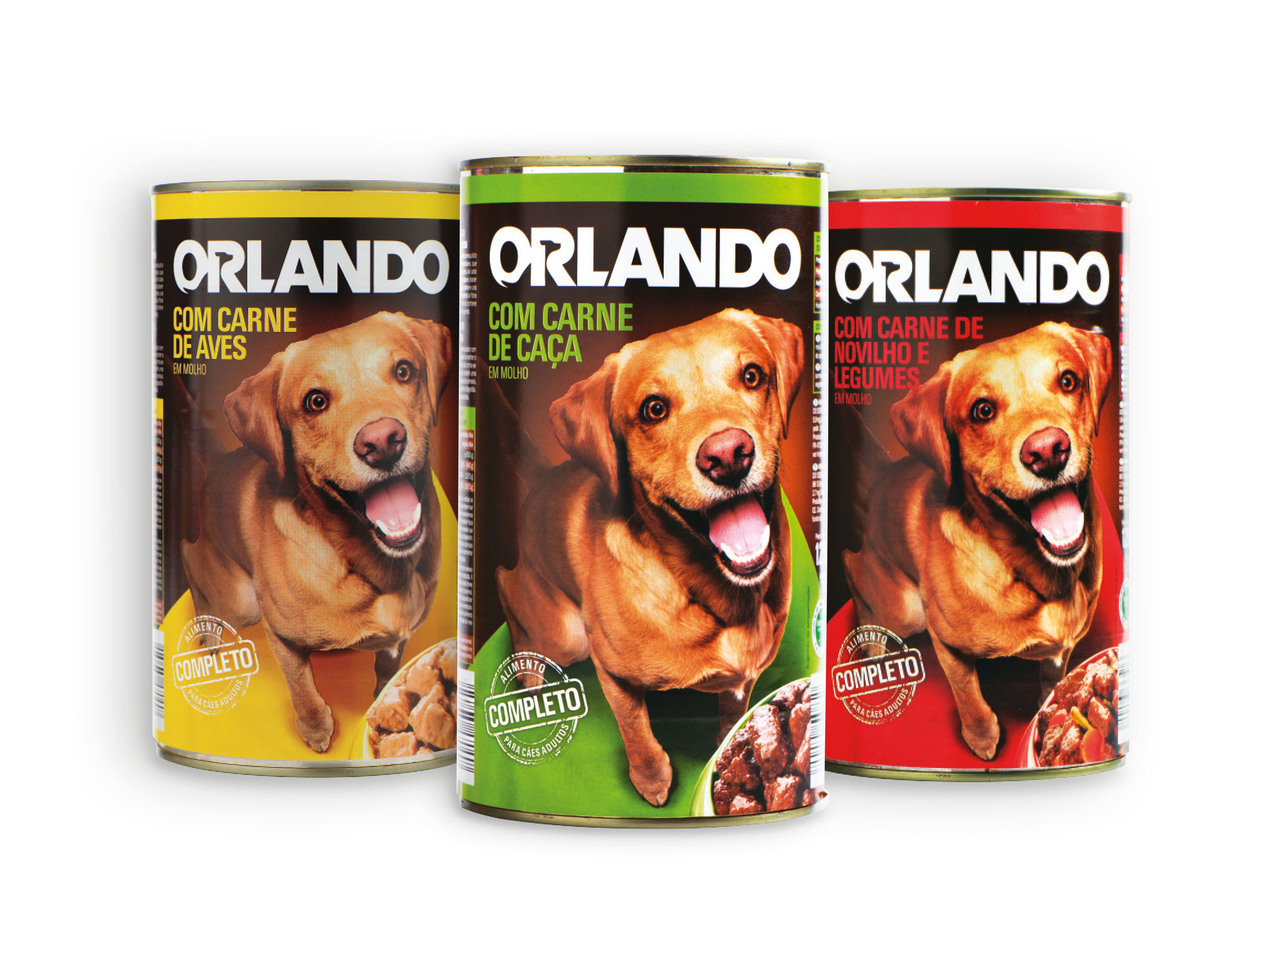 ORLANDO(R) Alimento Completo para Cão